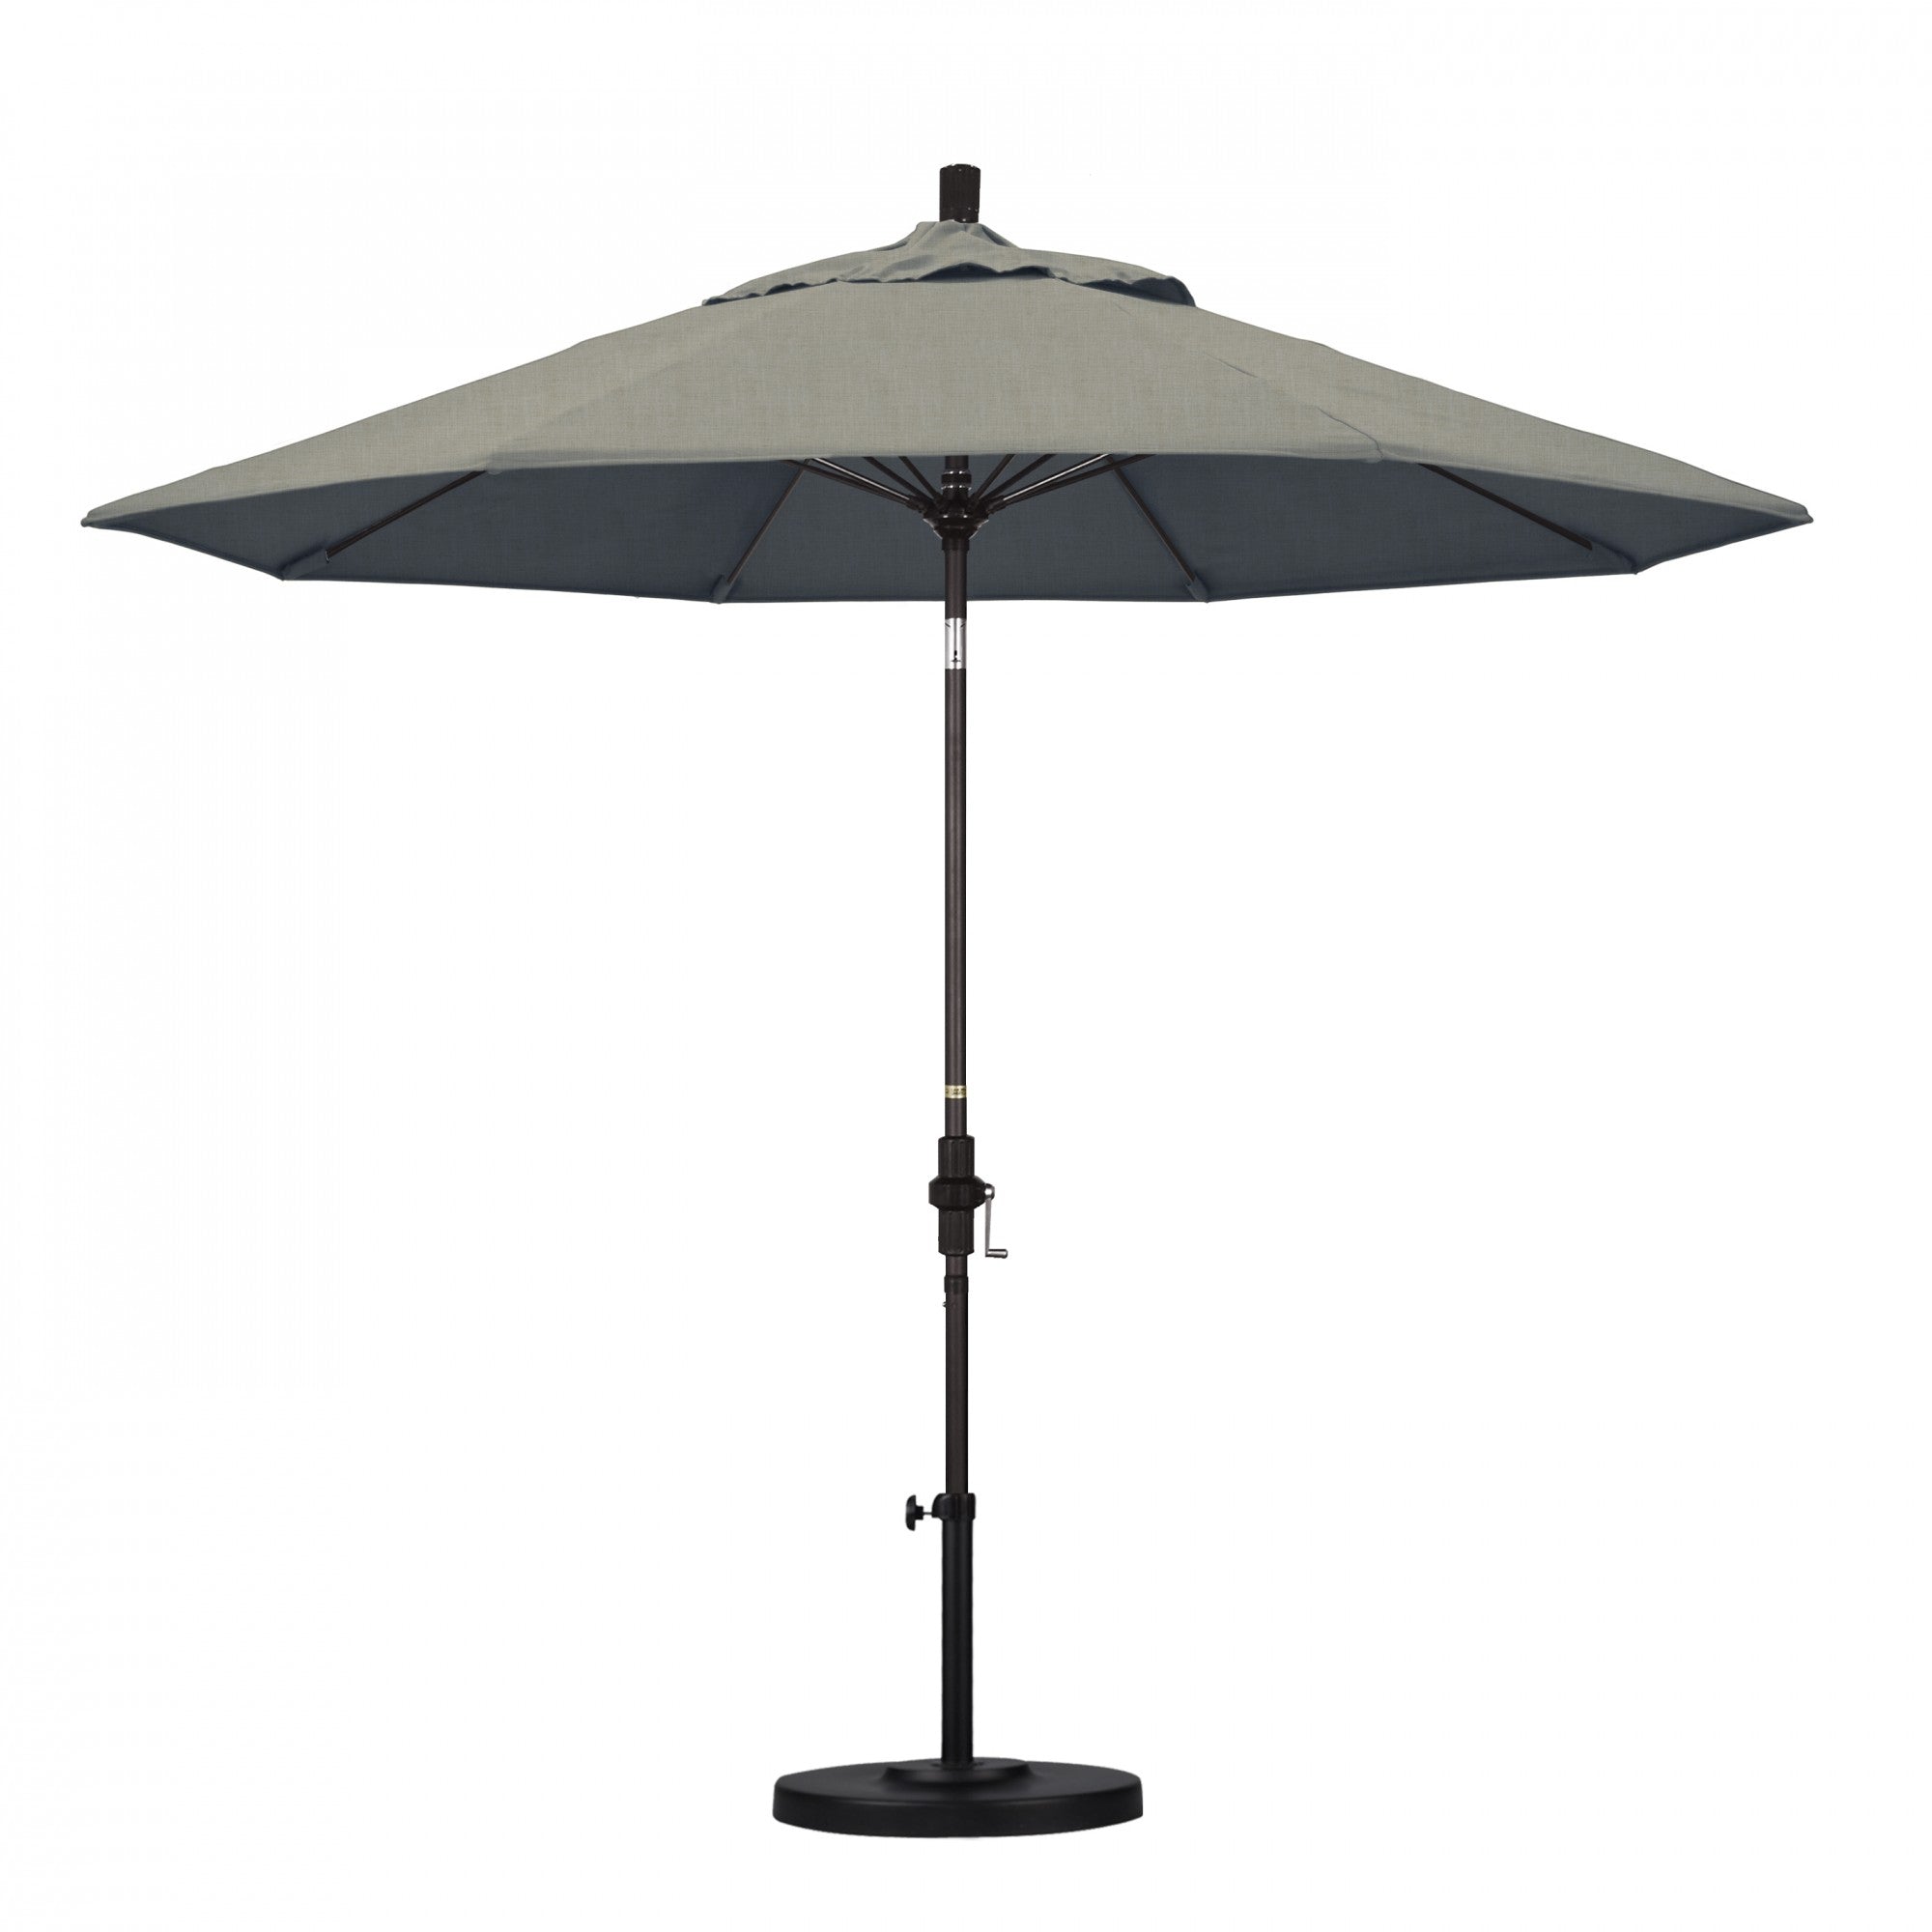 California Umbrella - 9' - Patio Umbrella Umbrella - Aluminum Pole - Spectrum Dove - Sunbrella  - GSCUF908117-48032